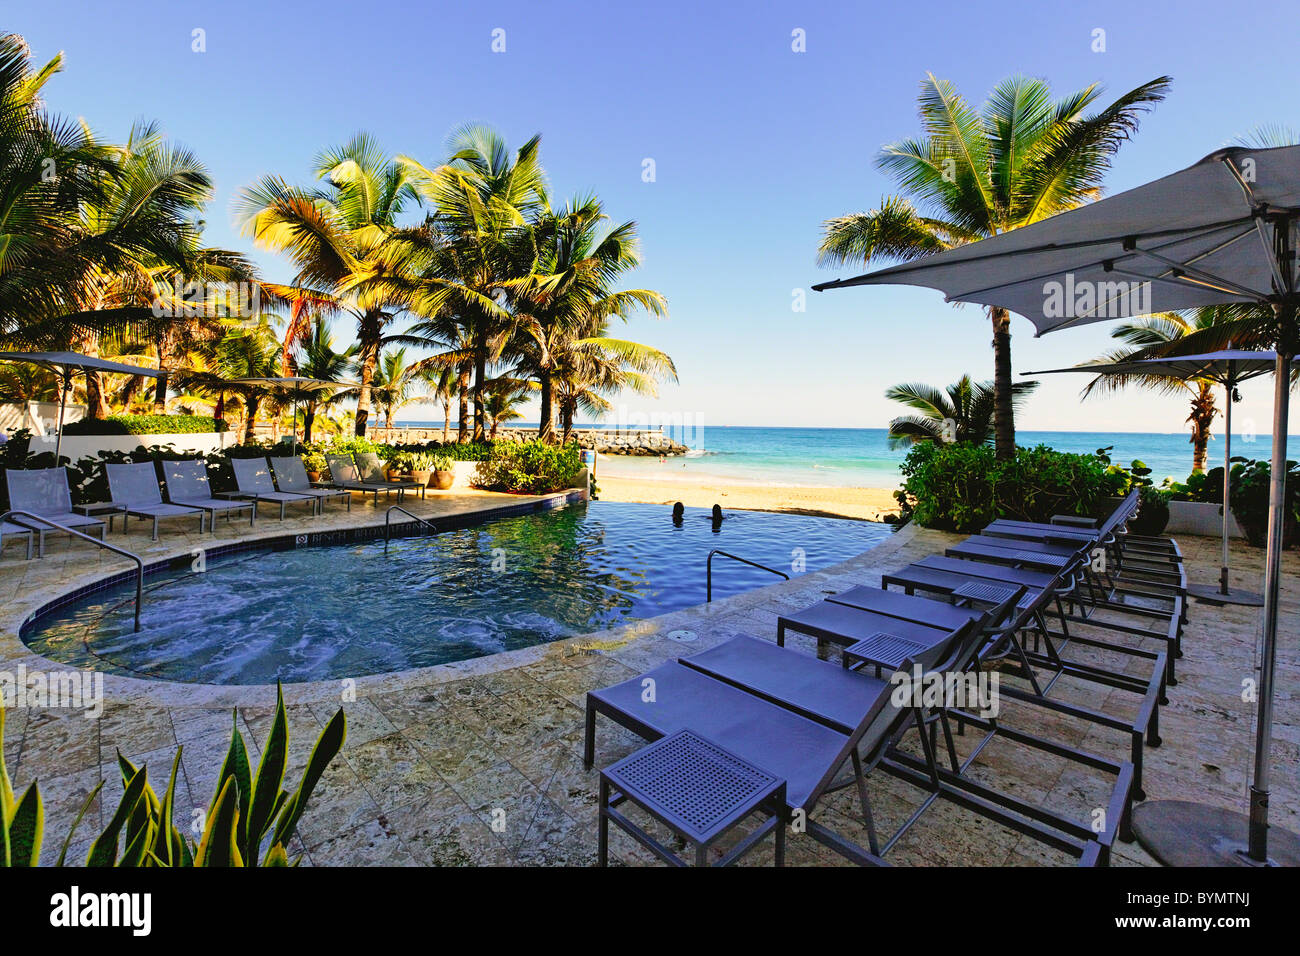 Pool at Condado, La Concha Marriott Resort Hotel, Puerto Rico Stock Photo